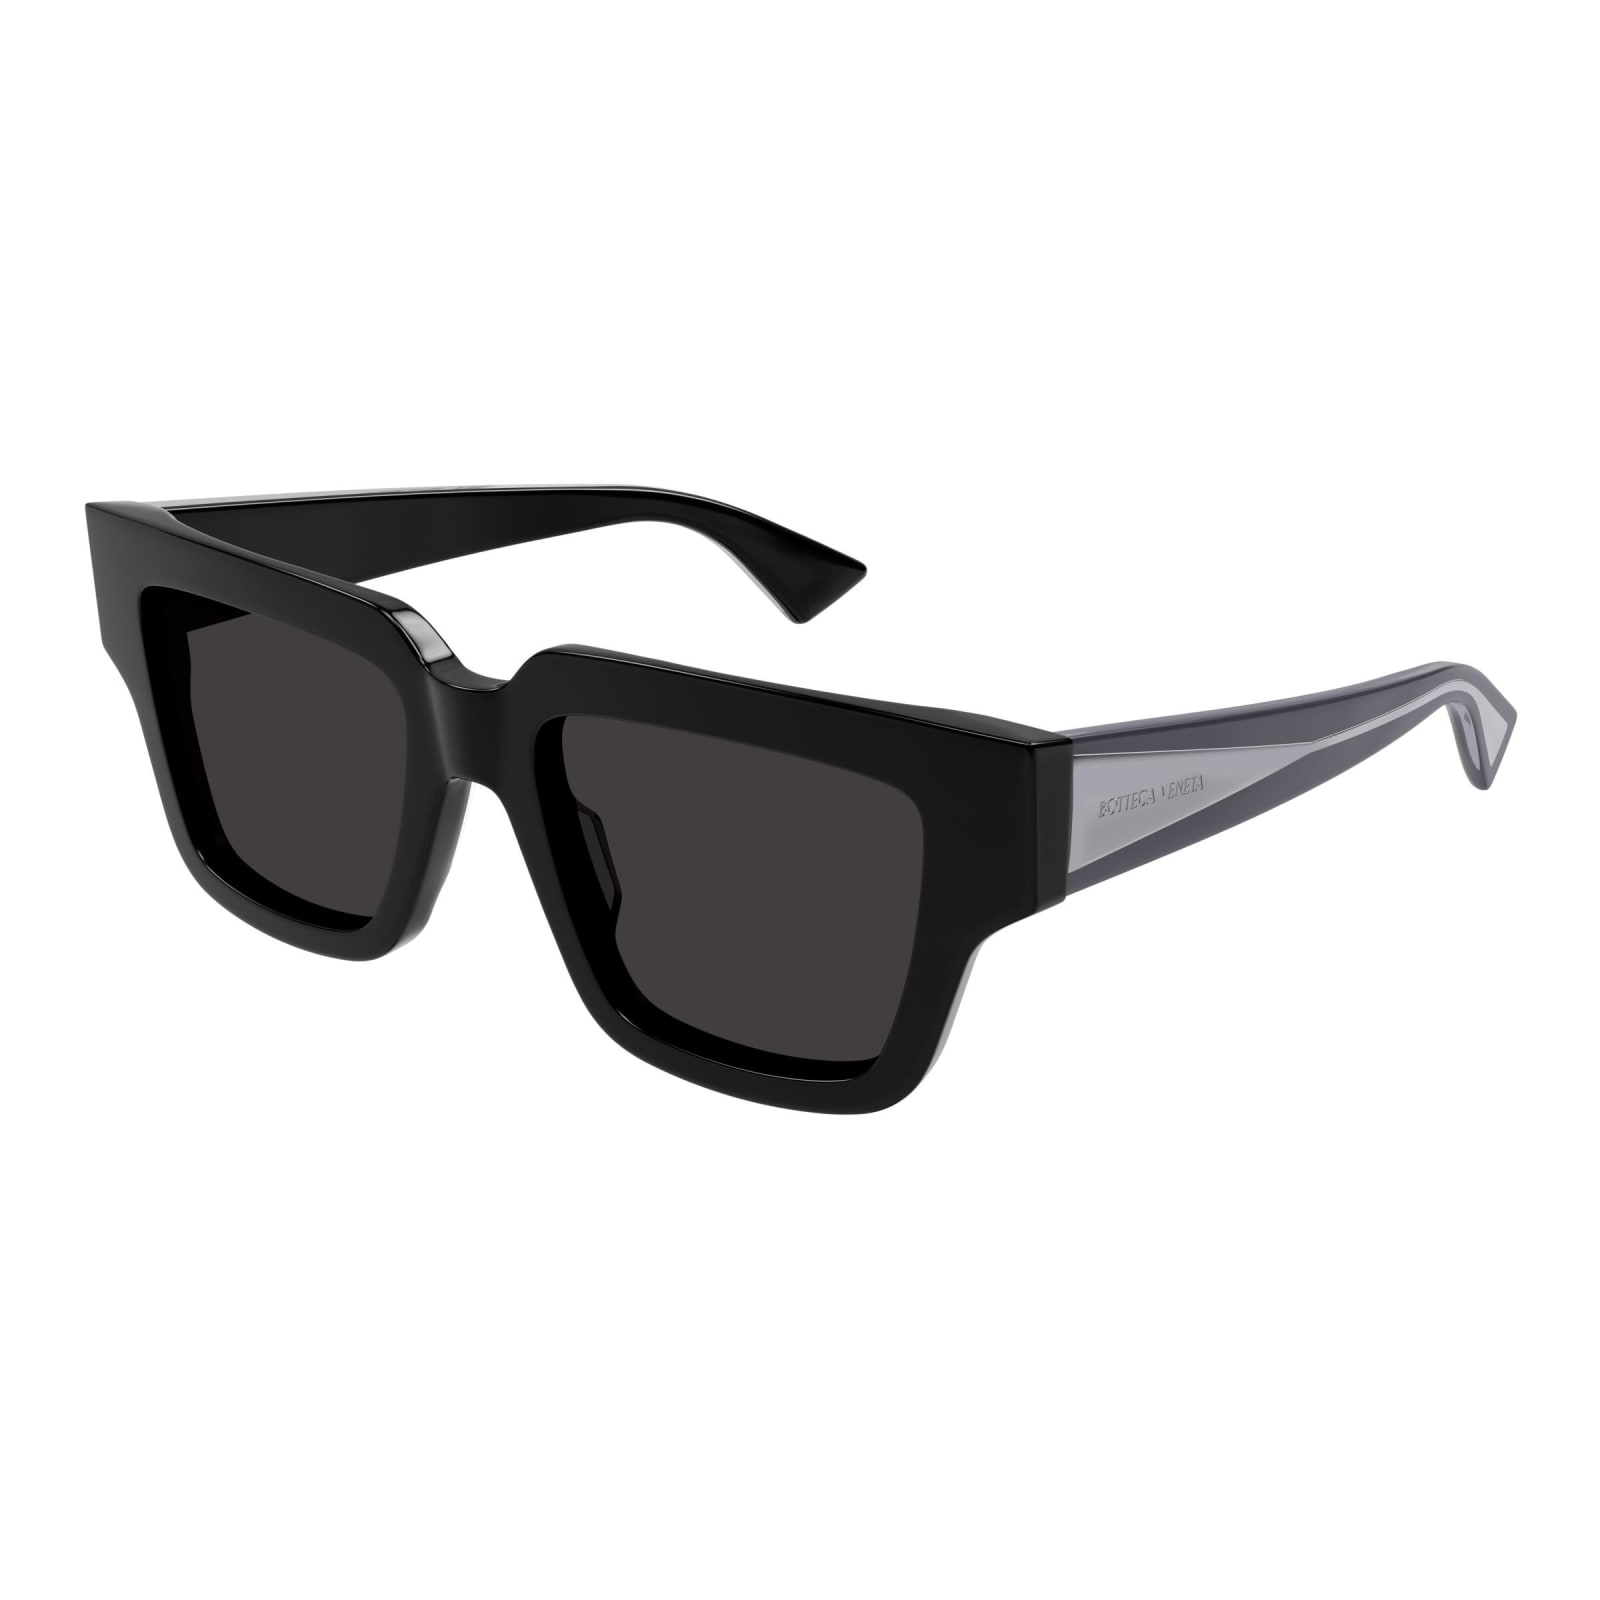 Bottega Veneta Eyewear Sunglasses